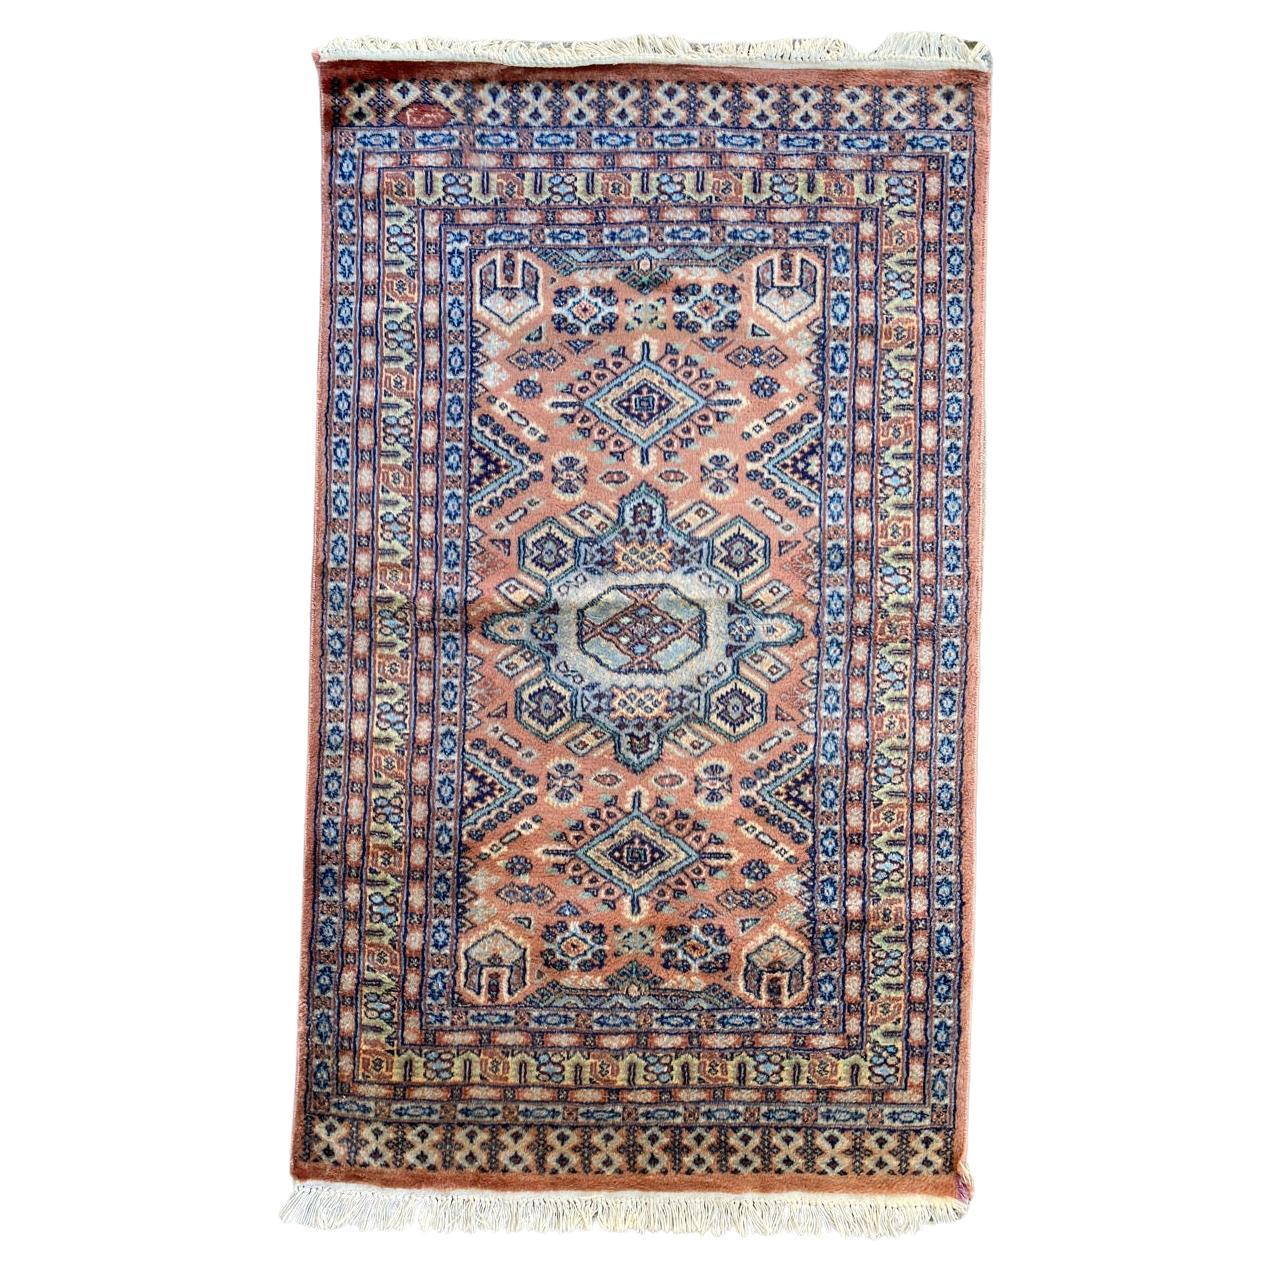 Bobyrugs schöner pakistanischer Vintage-Teppich